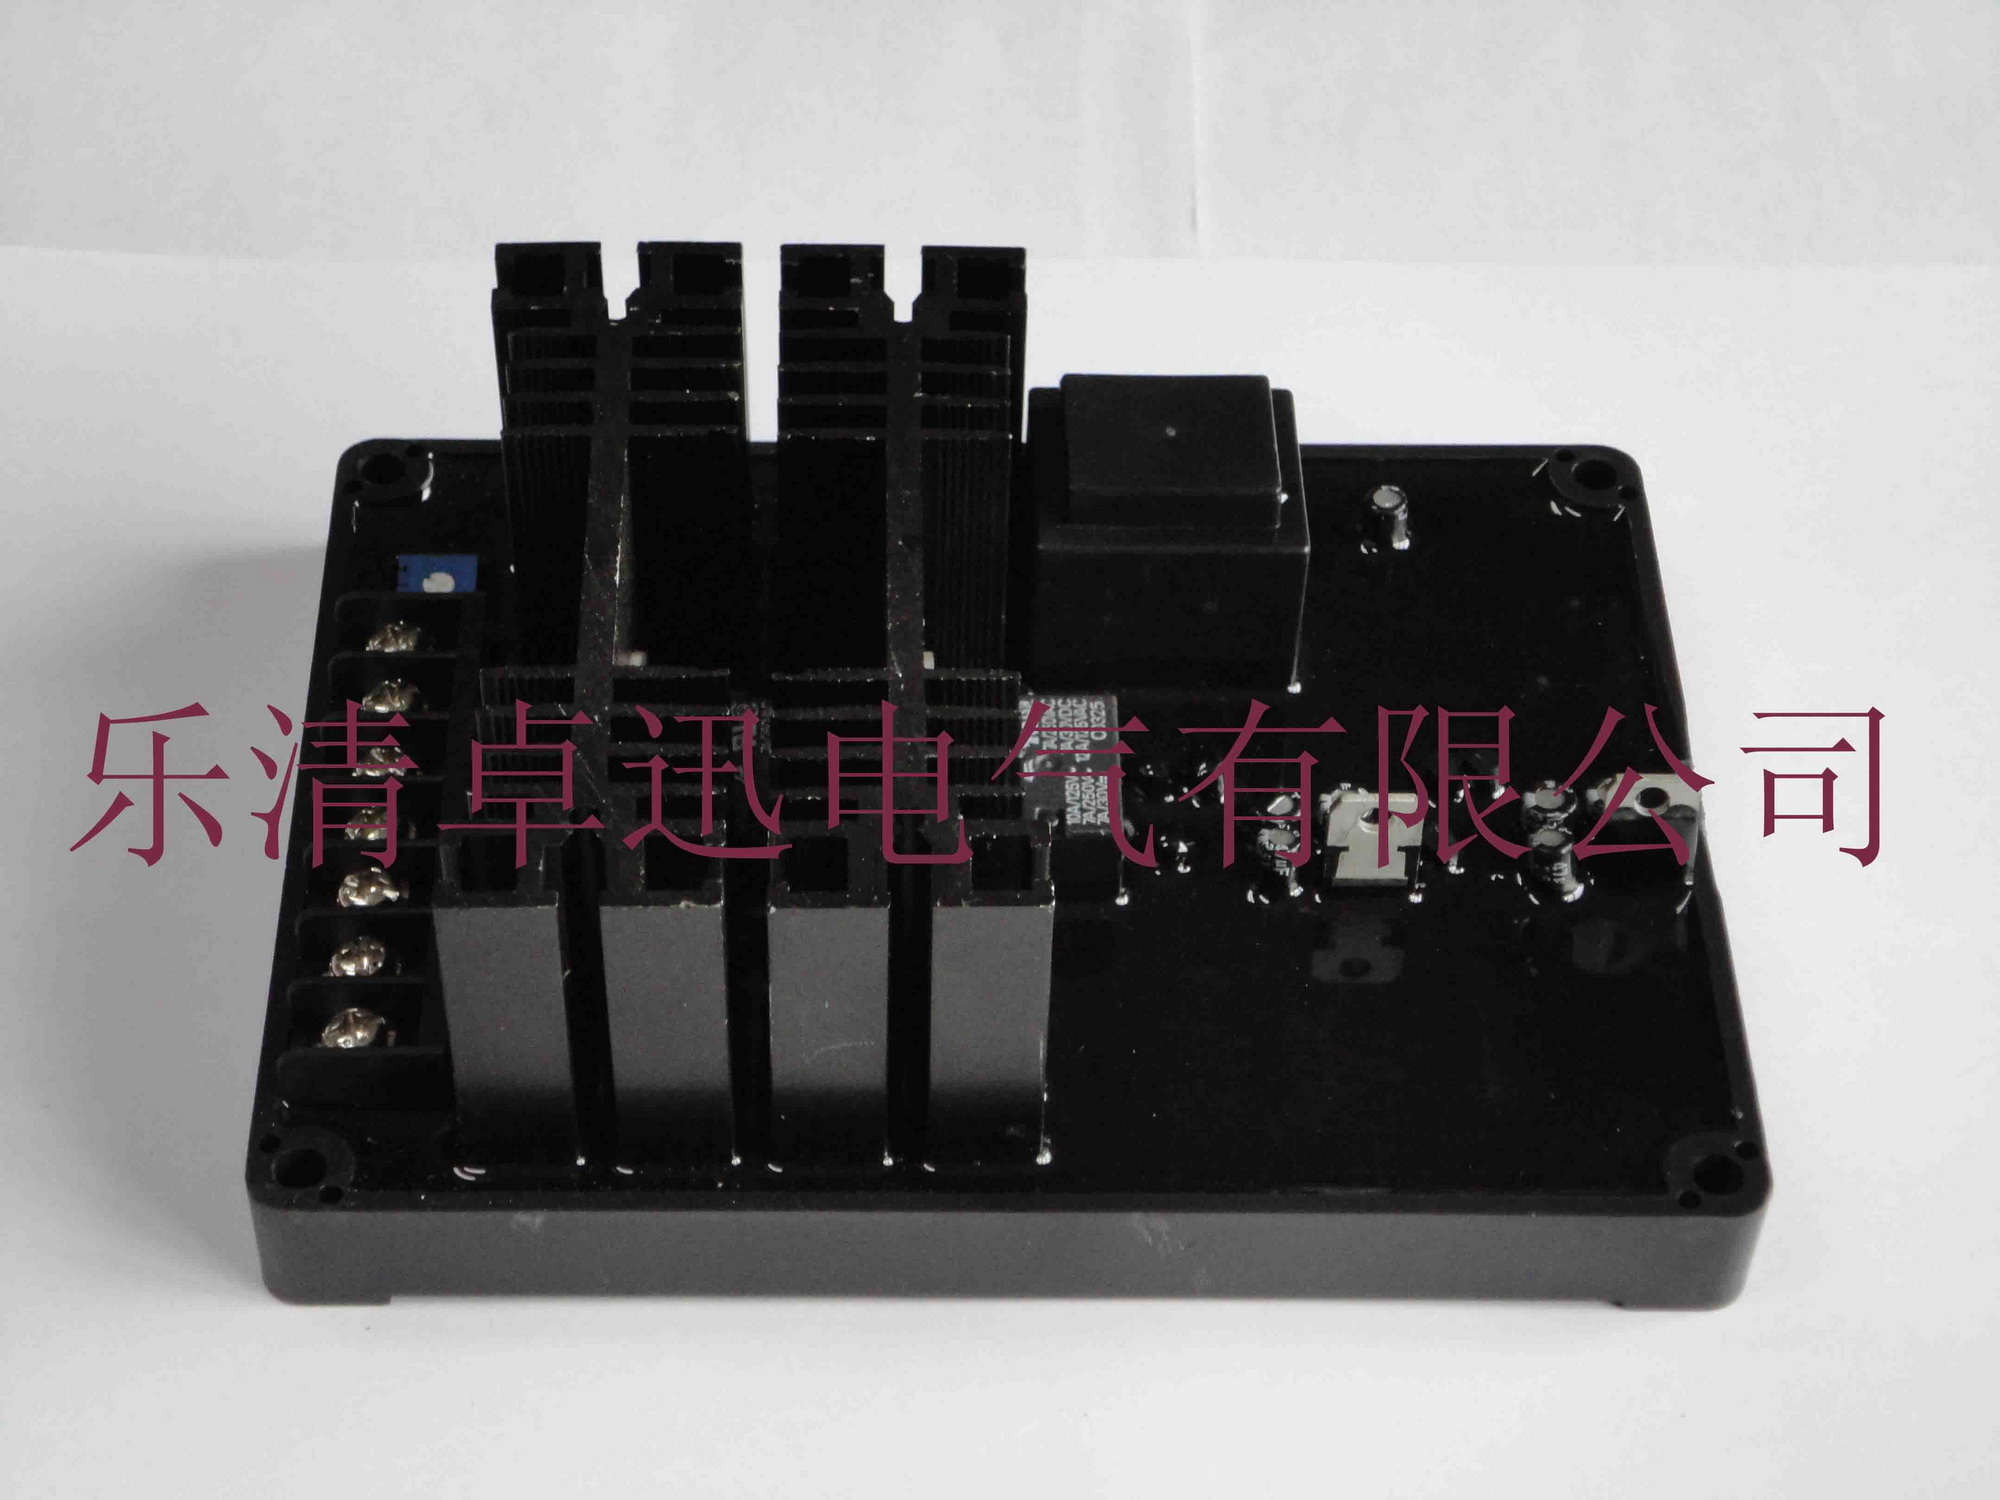 发电机自动电压调节器AVR Y130N 适用于谐波励磁发电机(船用)